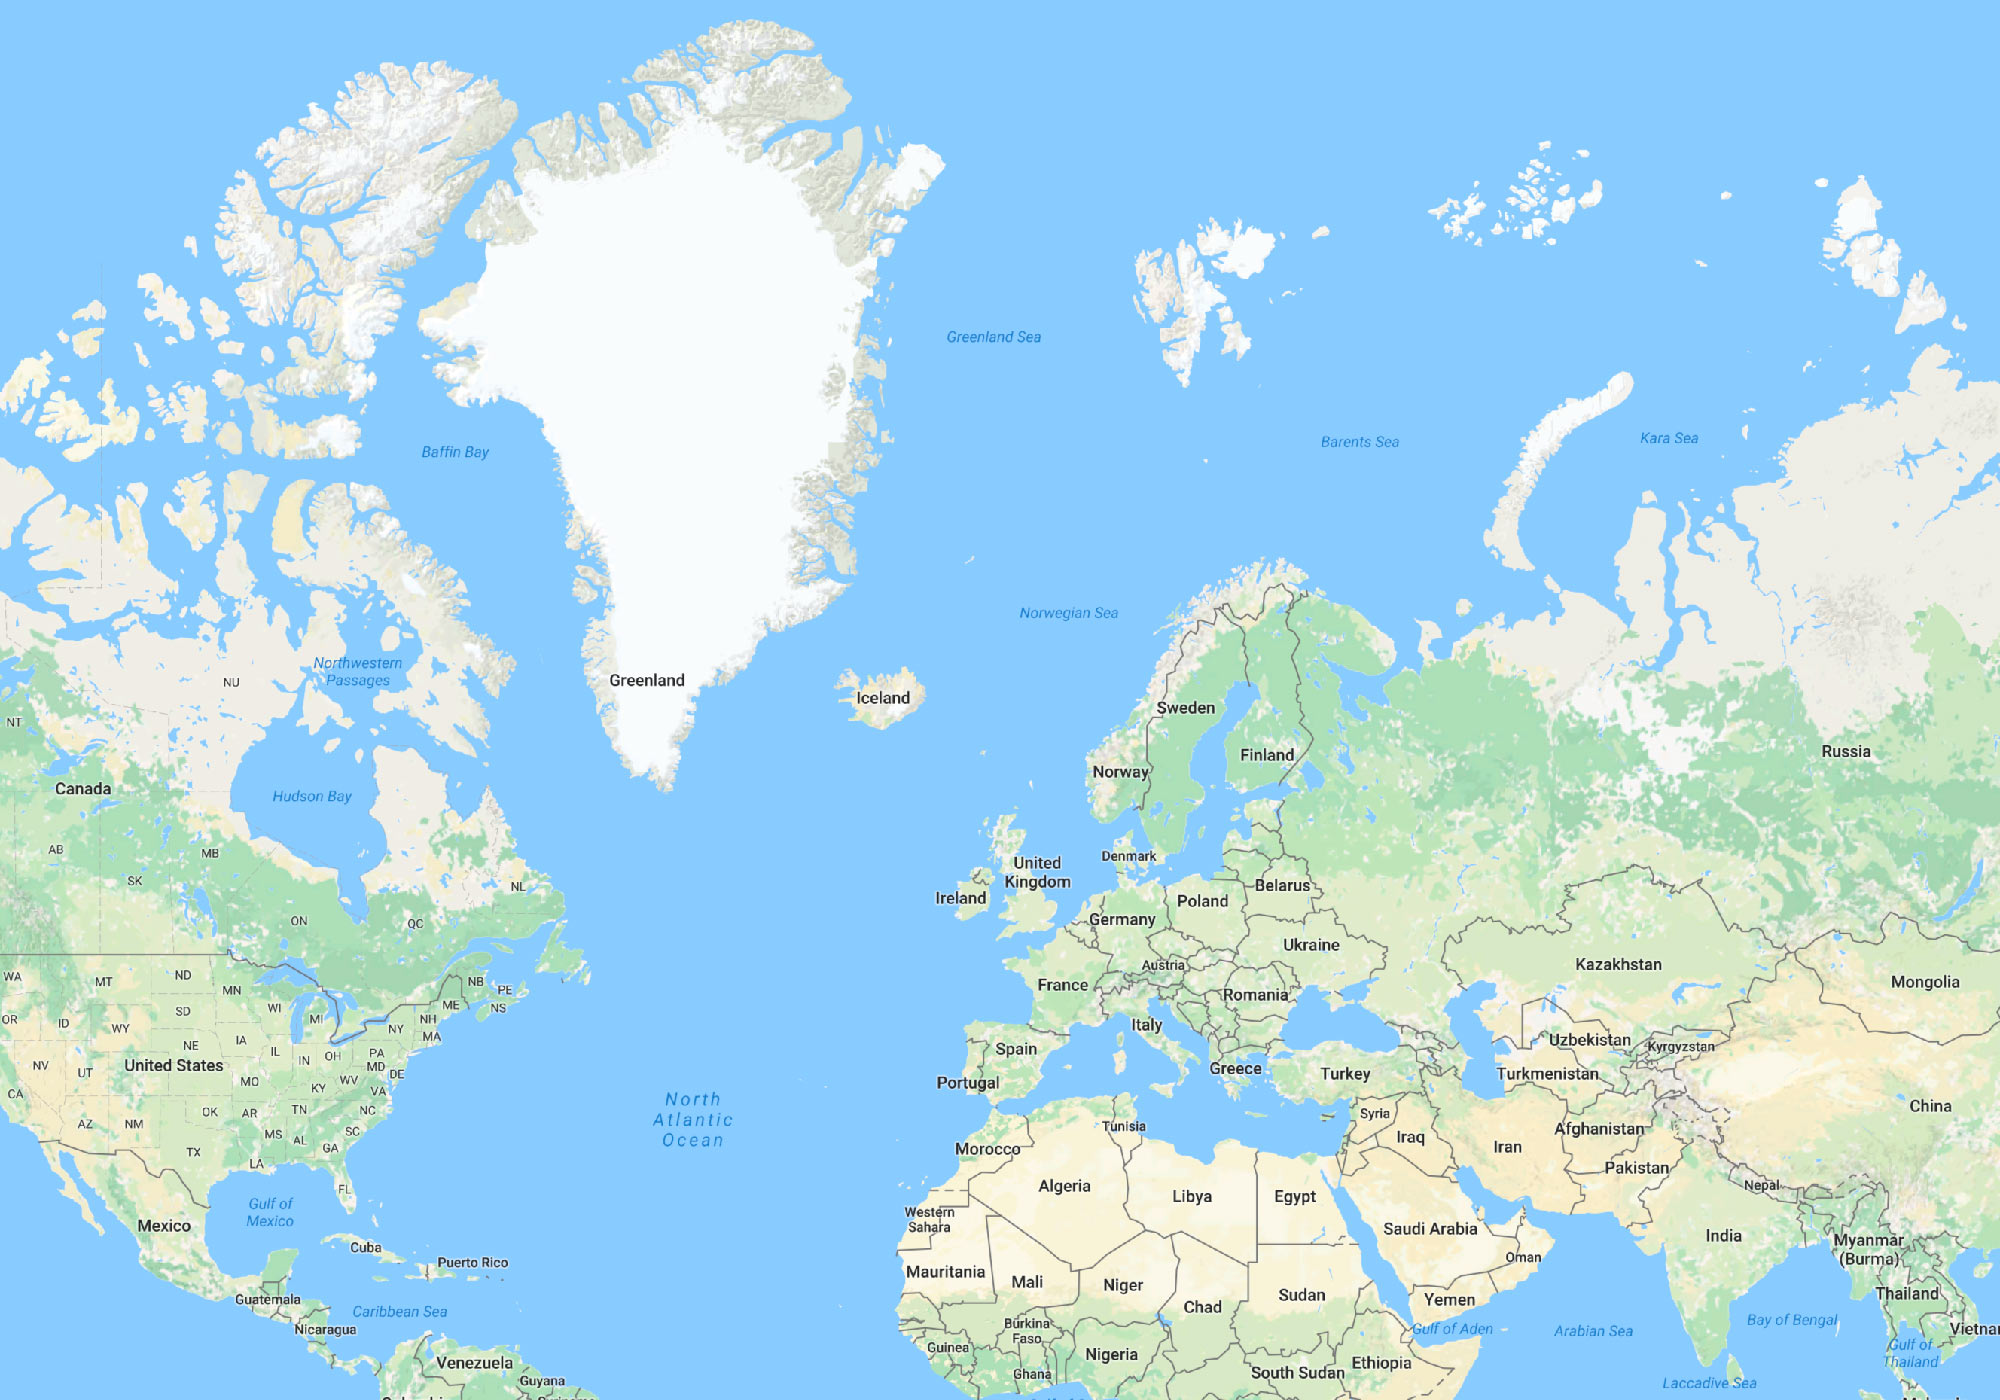 A Google Map